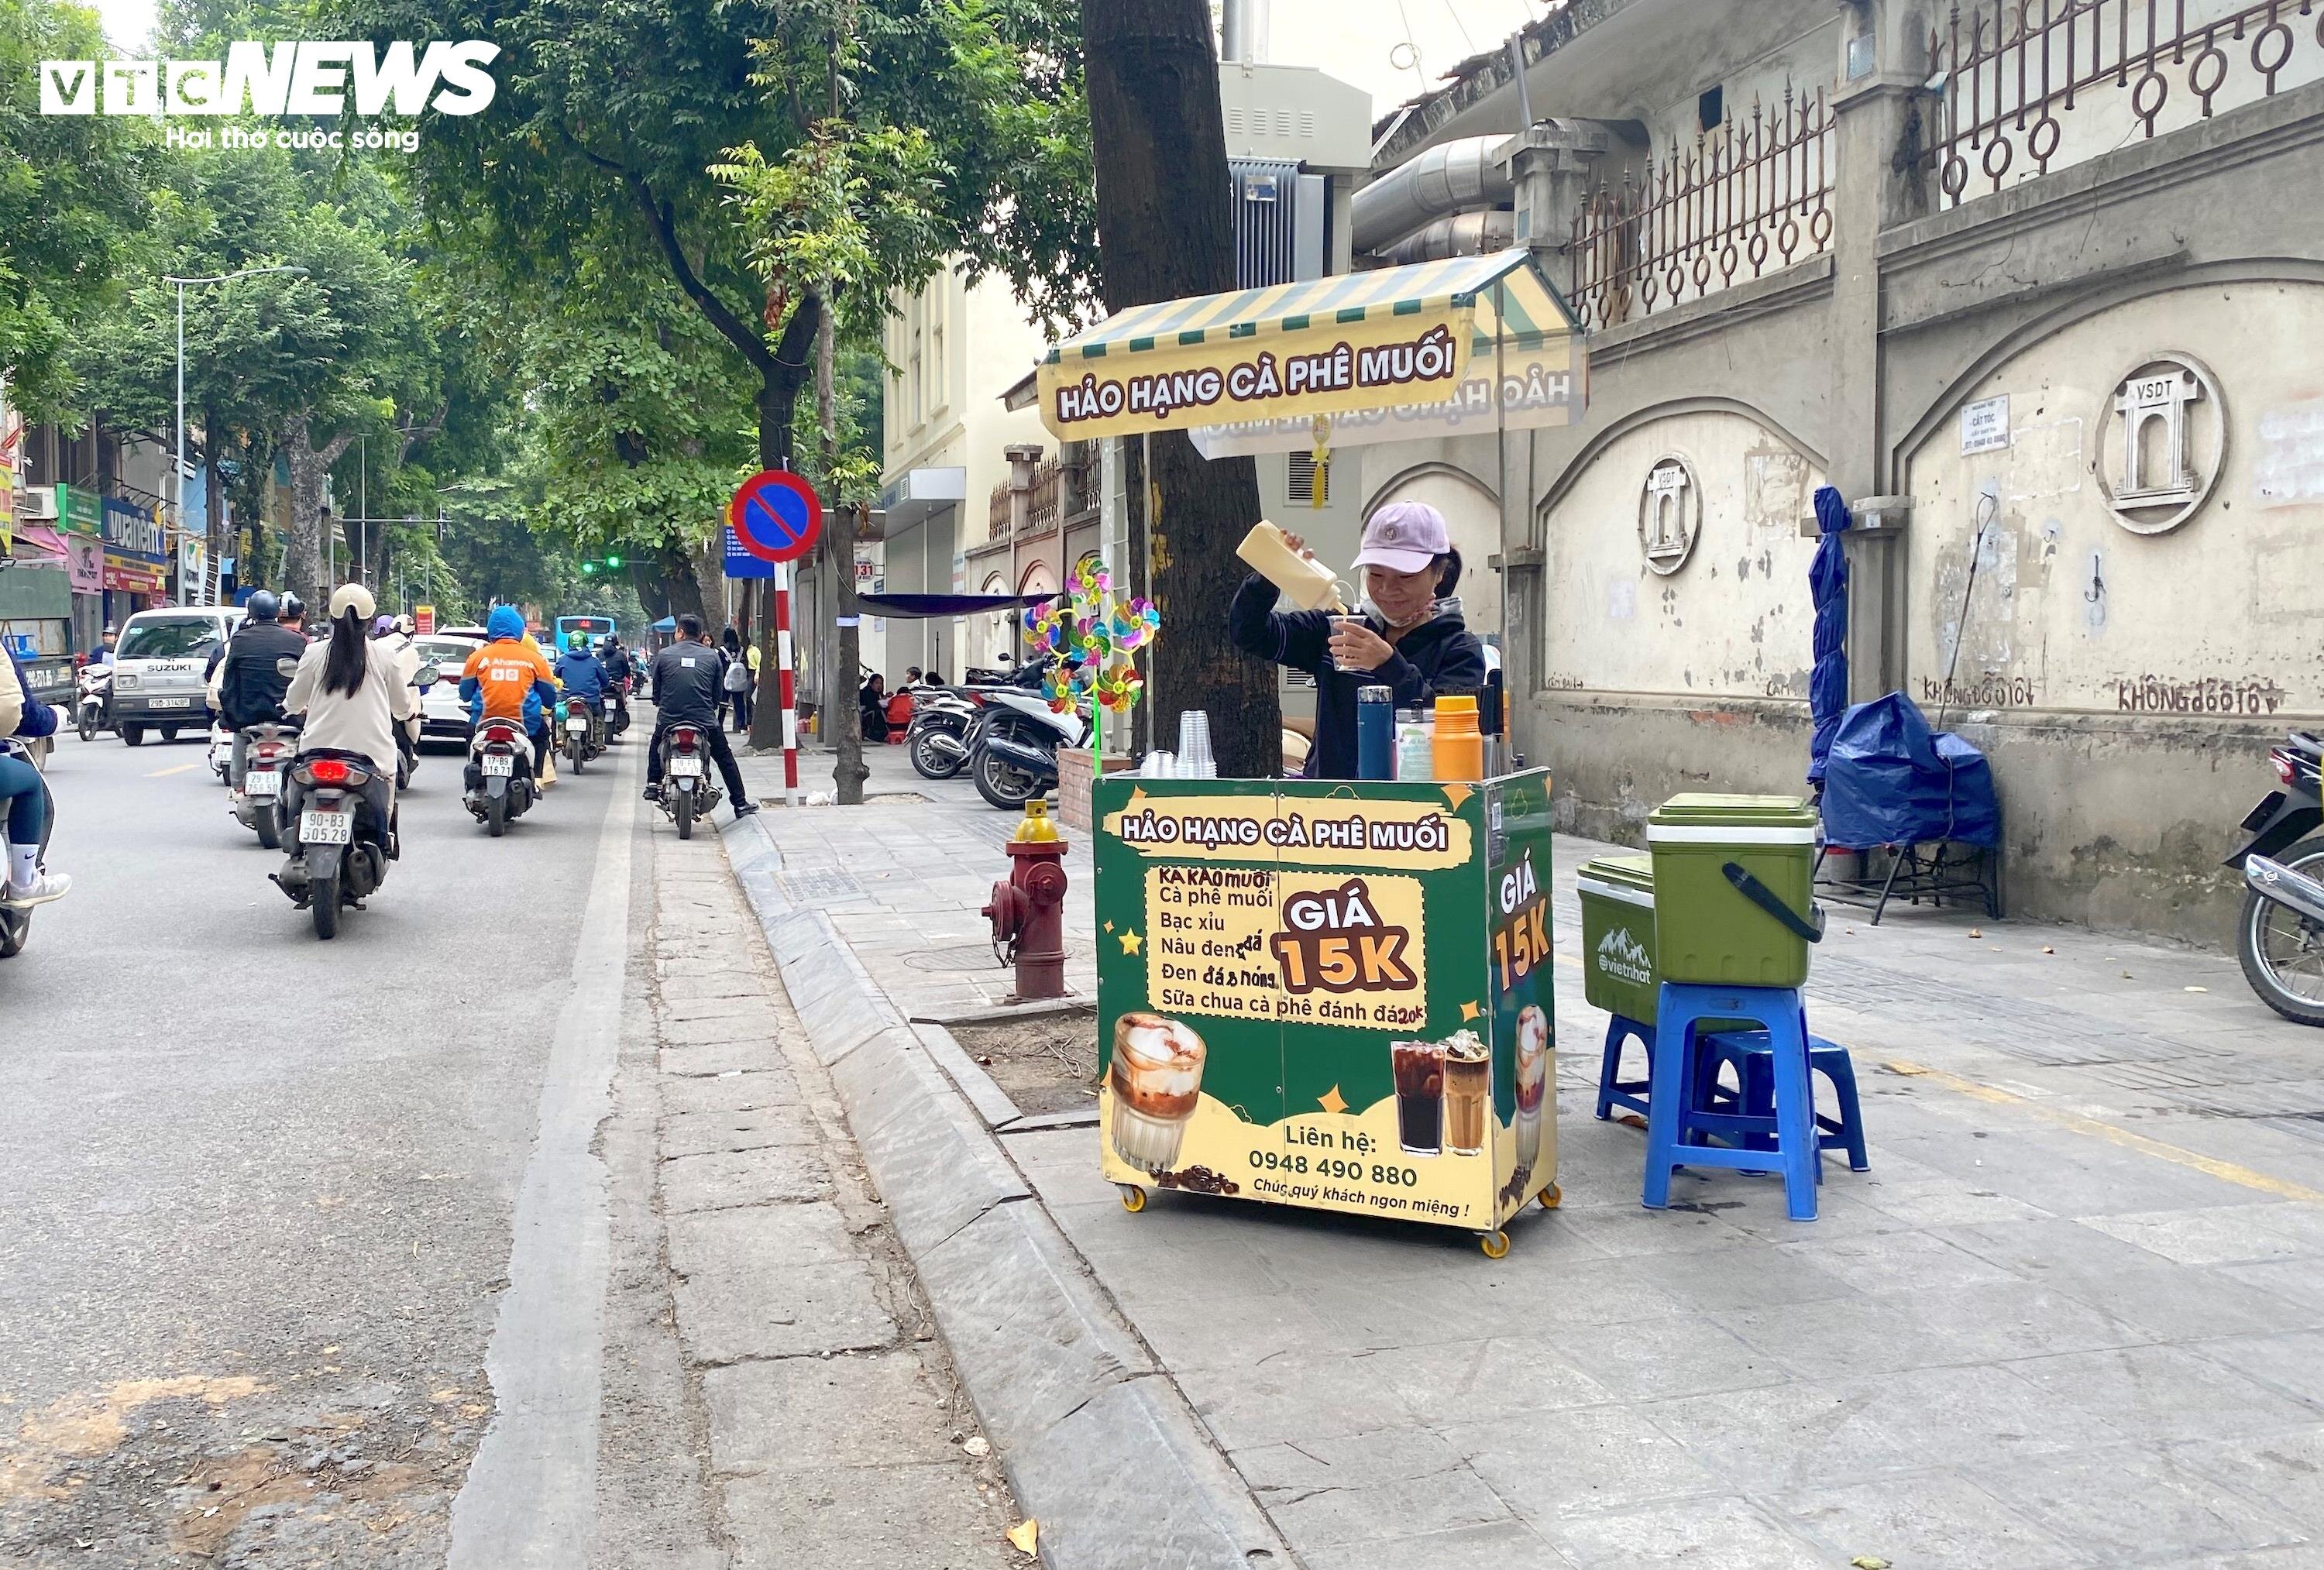 Cà phê muối xuất hiện mọi nơi trên đường phố Hà Nội. (Ảnh minh họa)